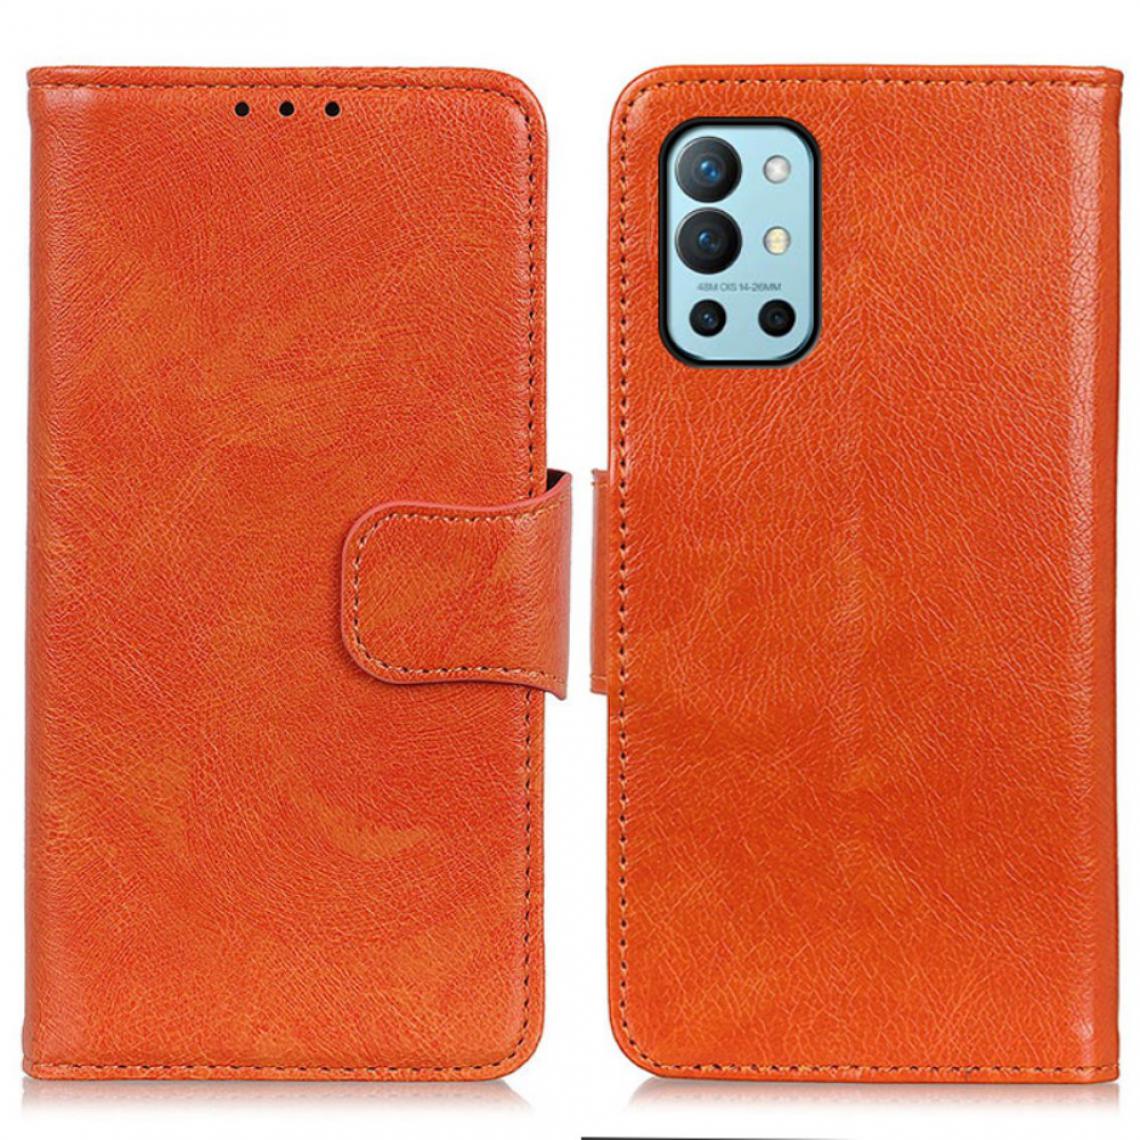 Other - Etui en PU Texture Nappa orange pour votre OnePlus 9R - Coque, étui smartphone